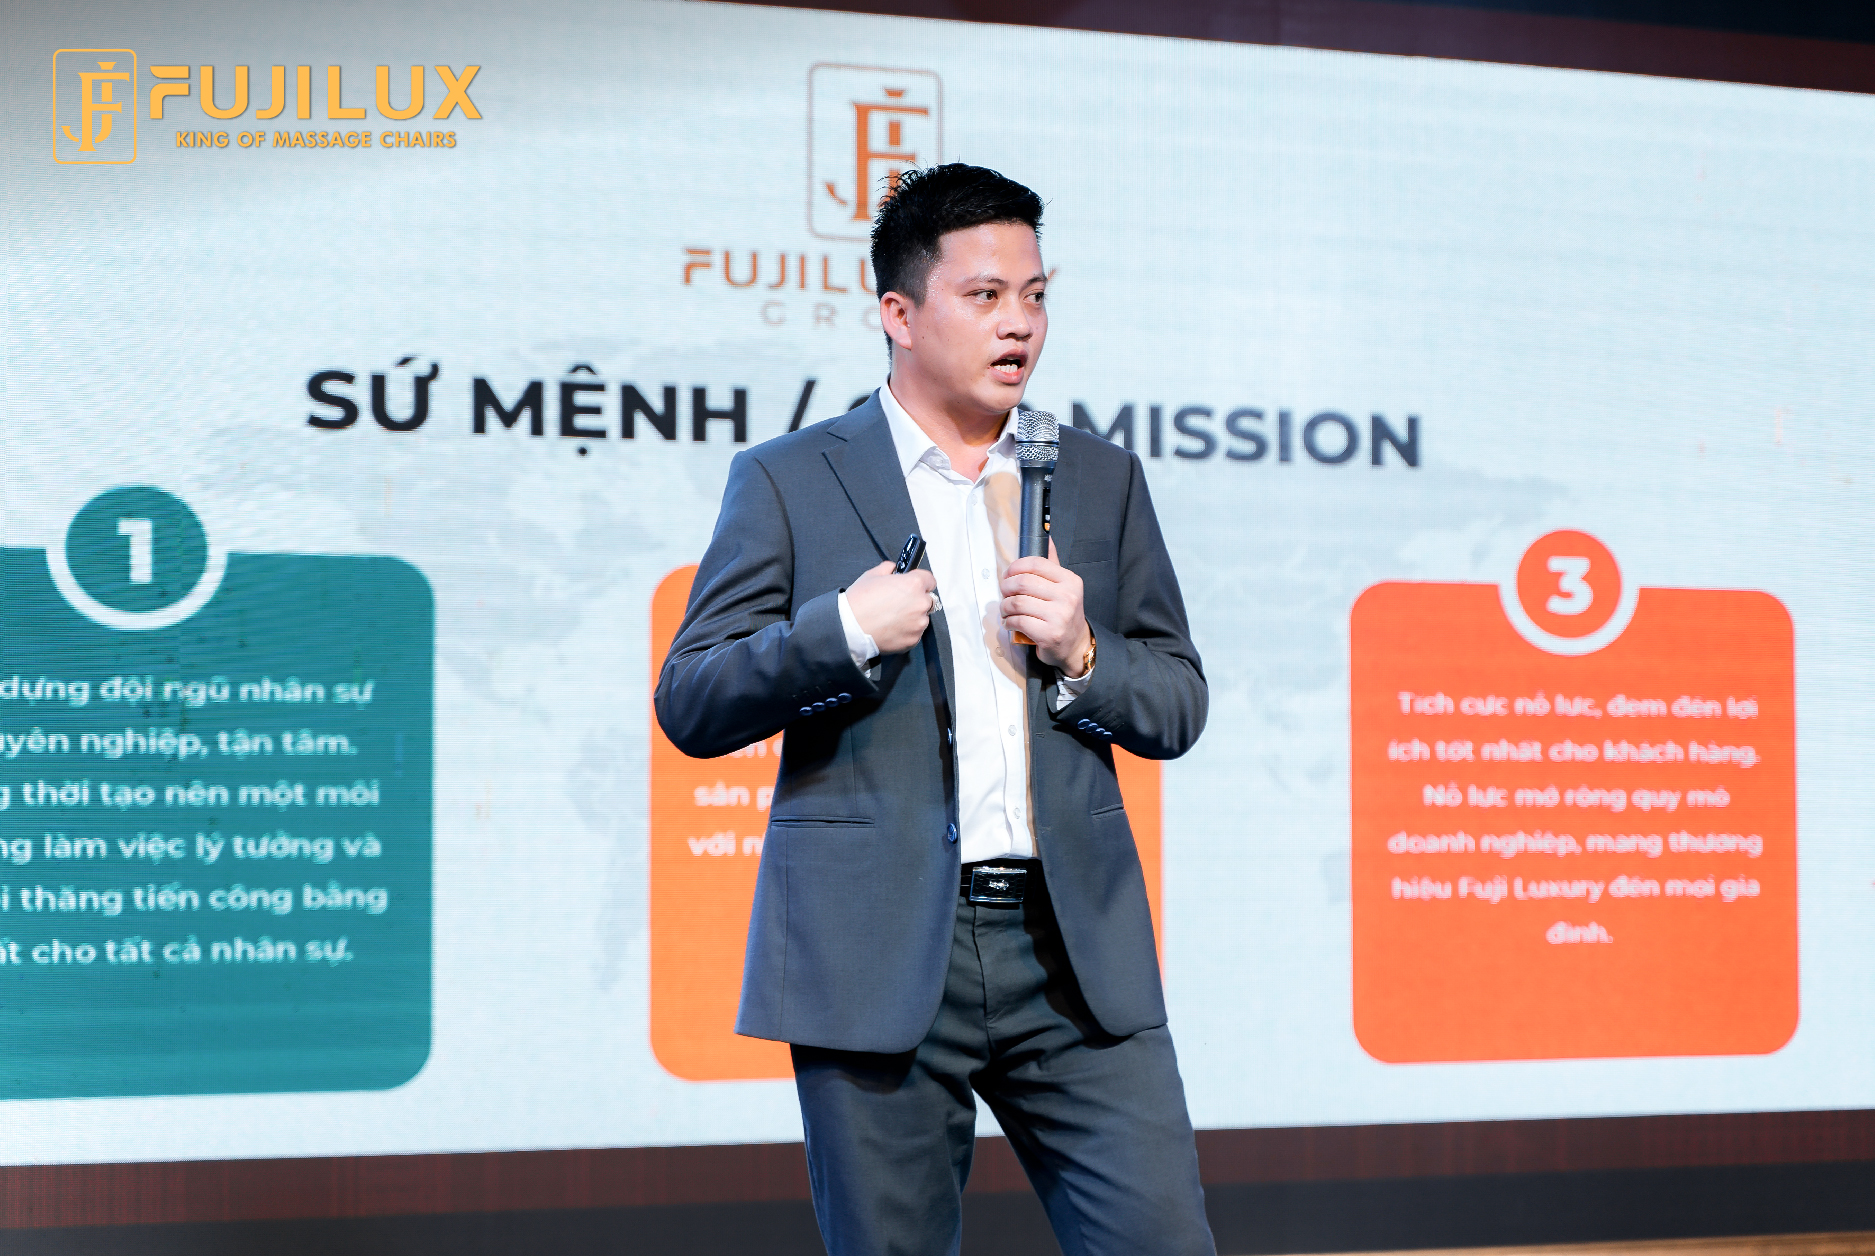 Ông Chu Quang Huy - Đại diện Fuji Luxury Group có những trao đổi kinh nghiệm về kỹ năng bán hàng